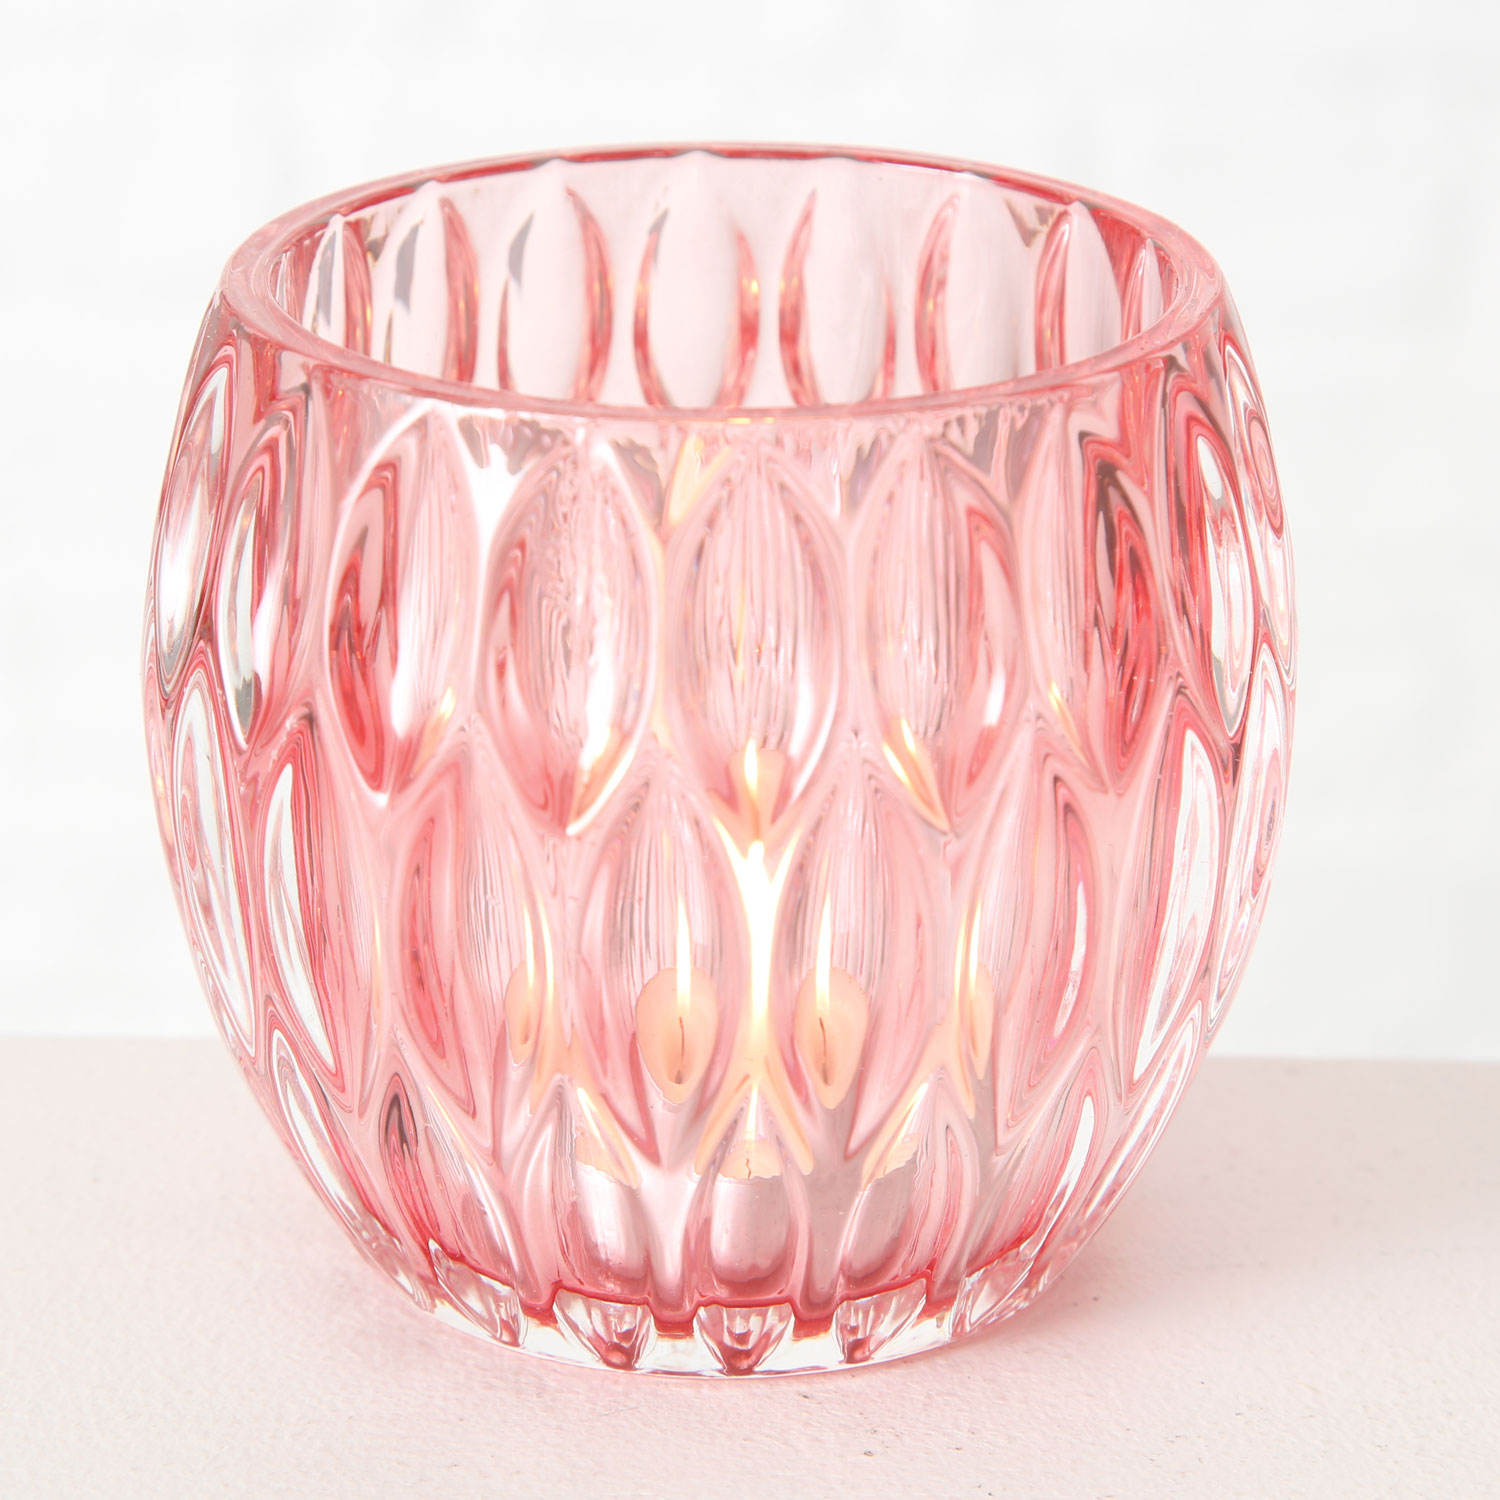 LS-LebenStil | Rose 3 10cm Glas Rosa Windlicht-Halter Teelichtglas Teelichthalter Set